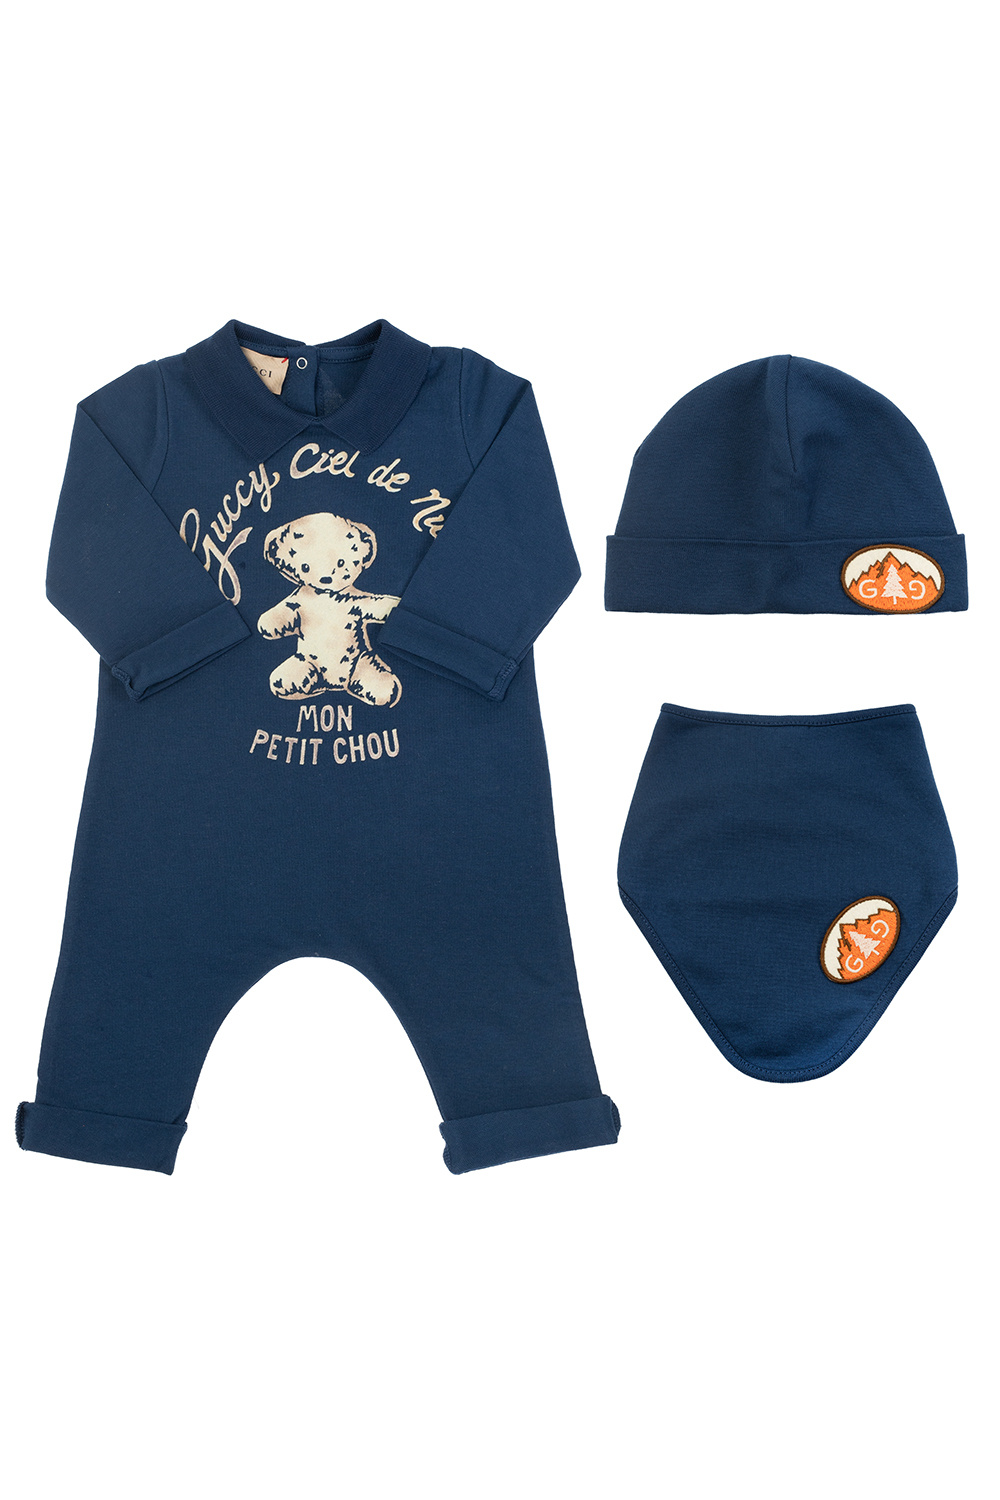 Observeer Eeuwigdurend Specifiek Gucci Kids Baby set with logo | Kids's Baby (0-36 months) | Vitkac